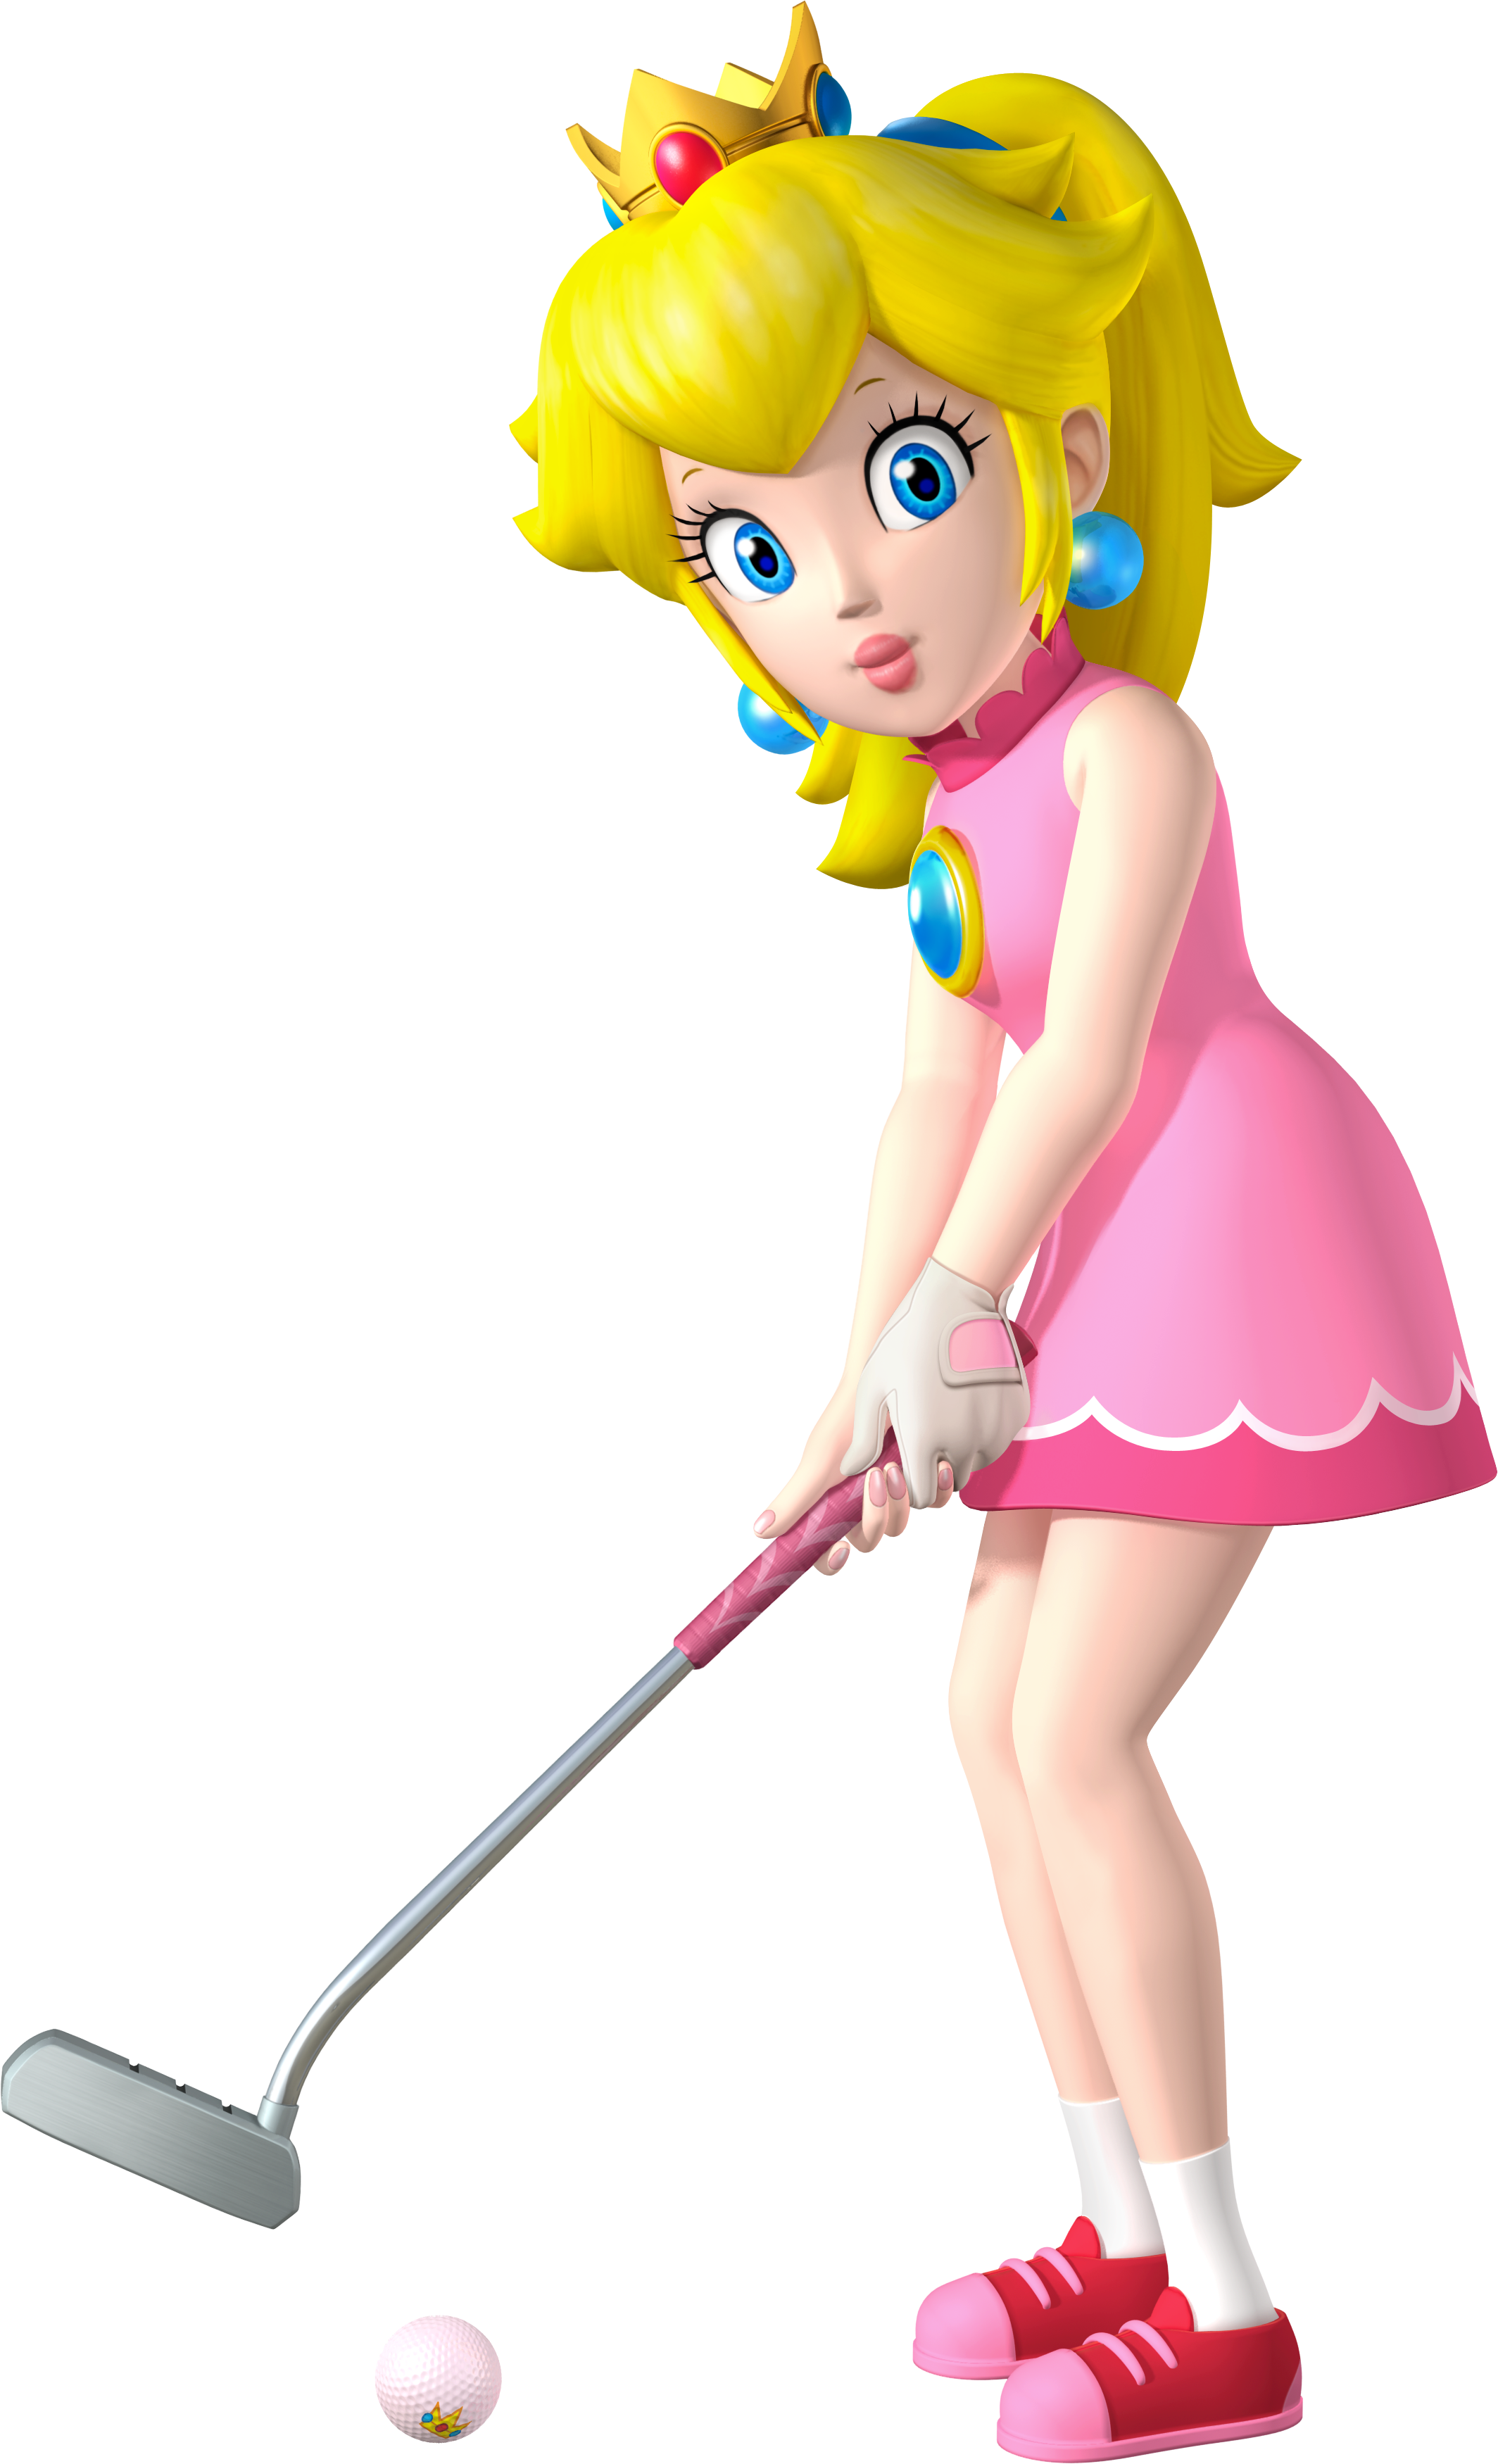 Princess_Peach_Artwork_-_Mario_Golf_World_Tour.png